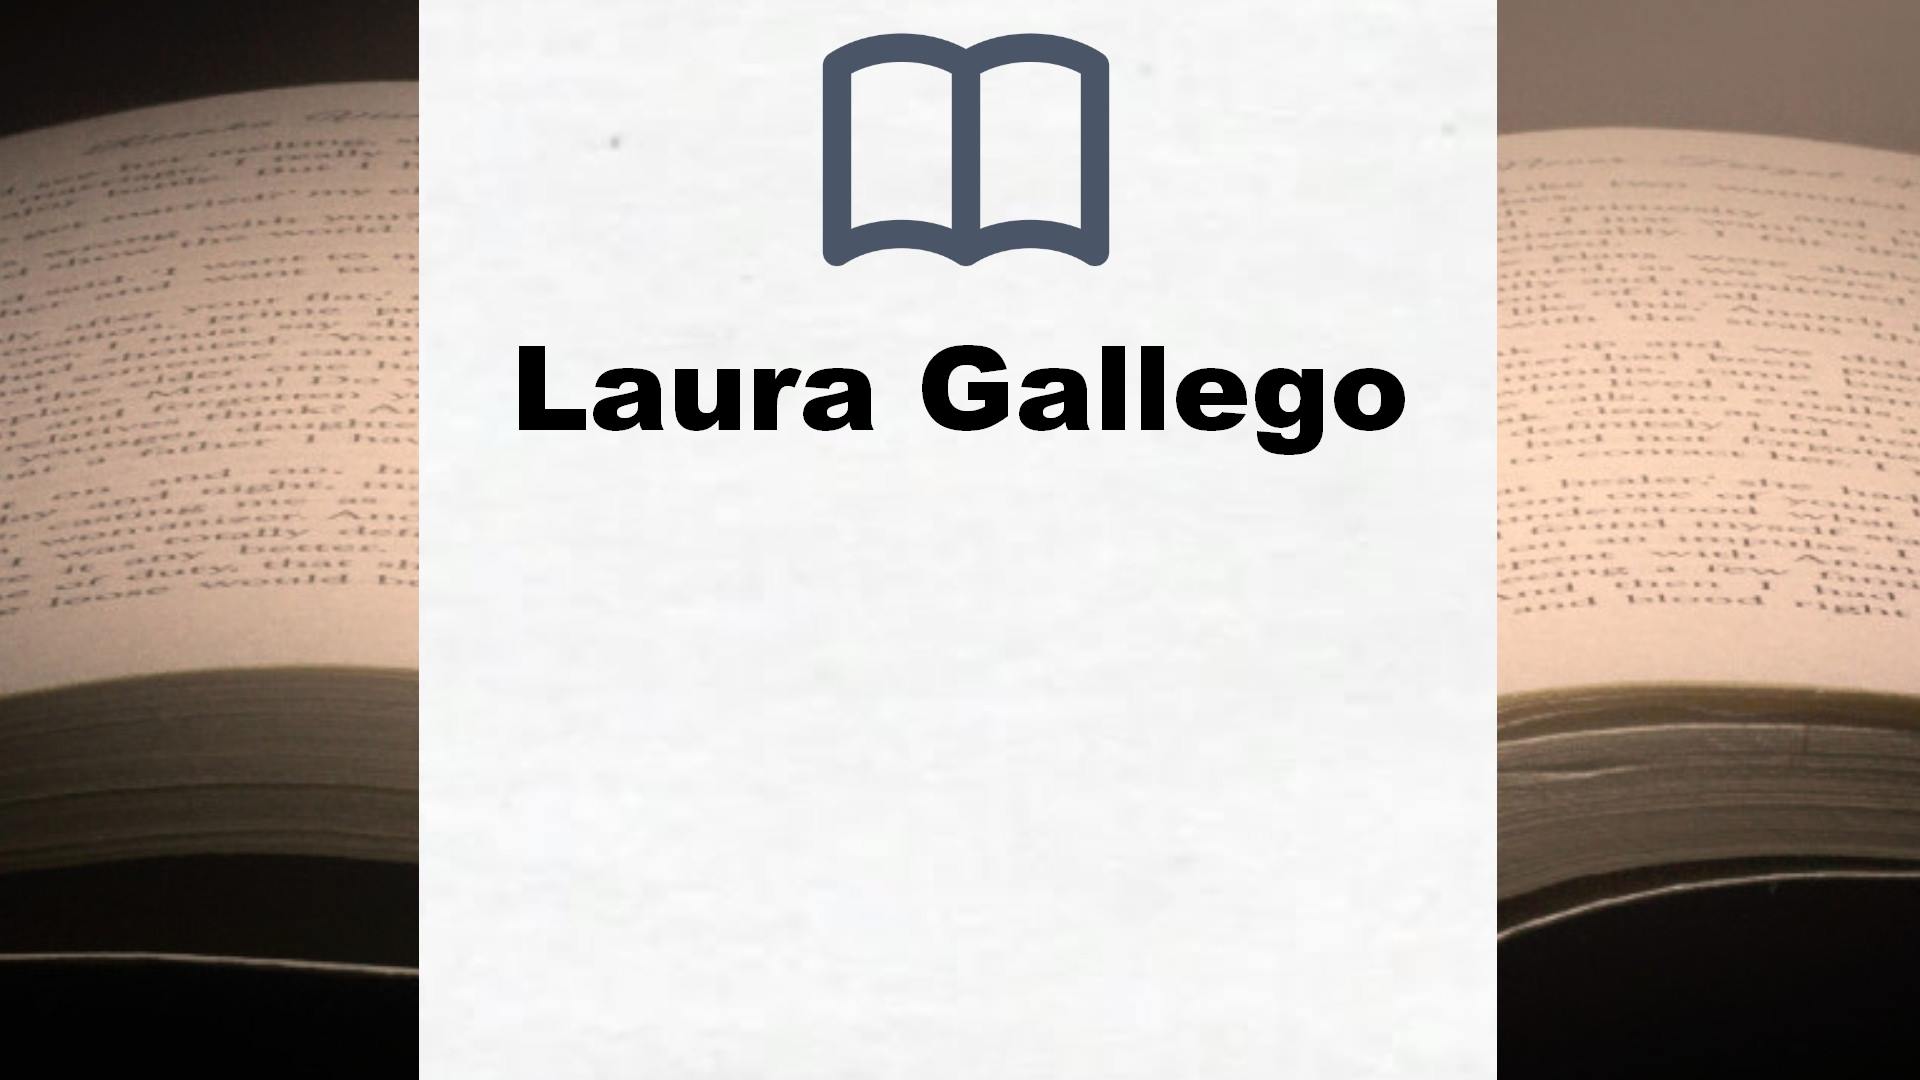 Libros Laura Gallego